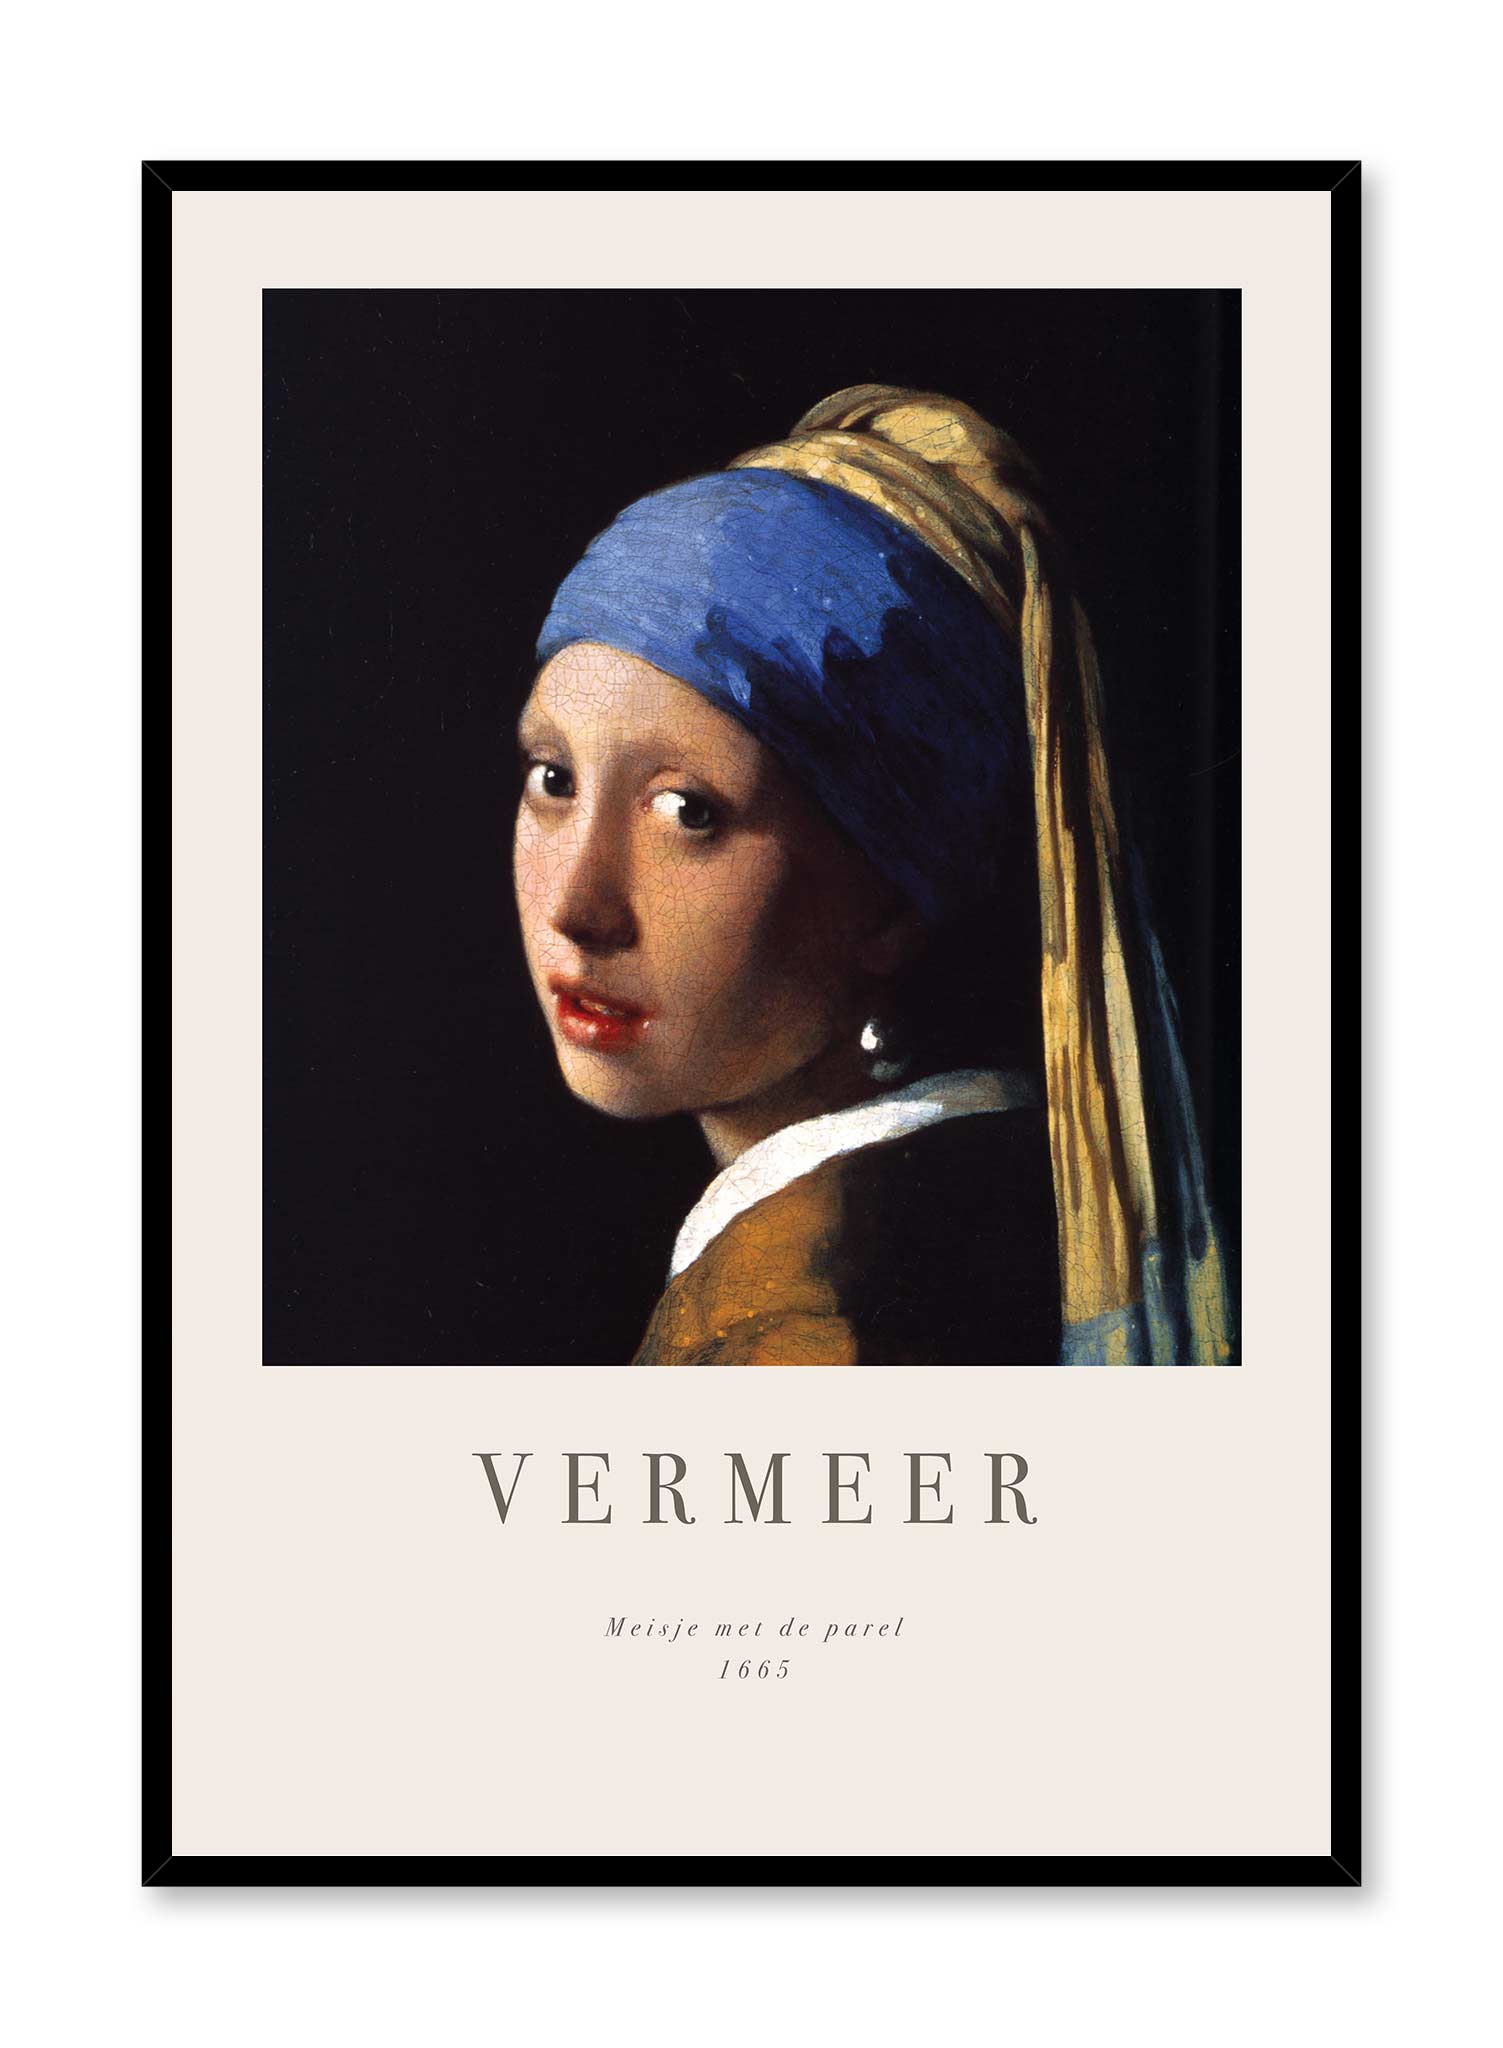 Girl with a Pearl Earring is a minimalist artwork by Opposite Wall of Johannes Vermeer's Meisje met de parel from 1665.